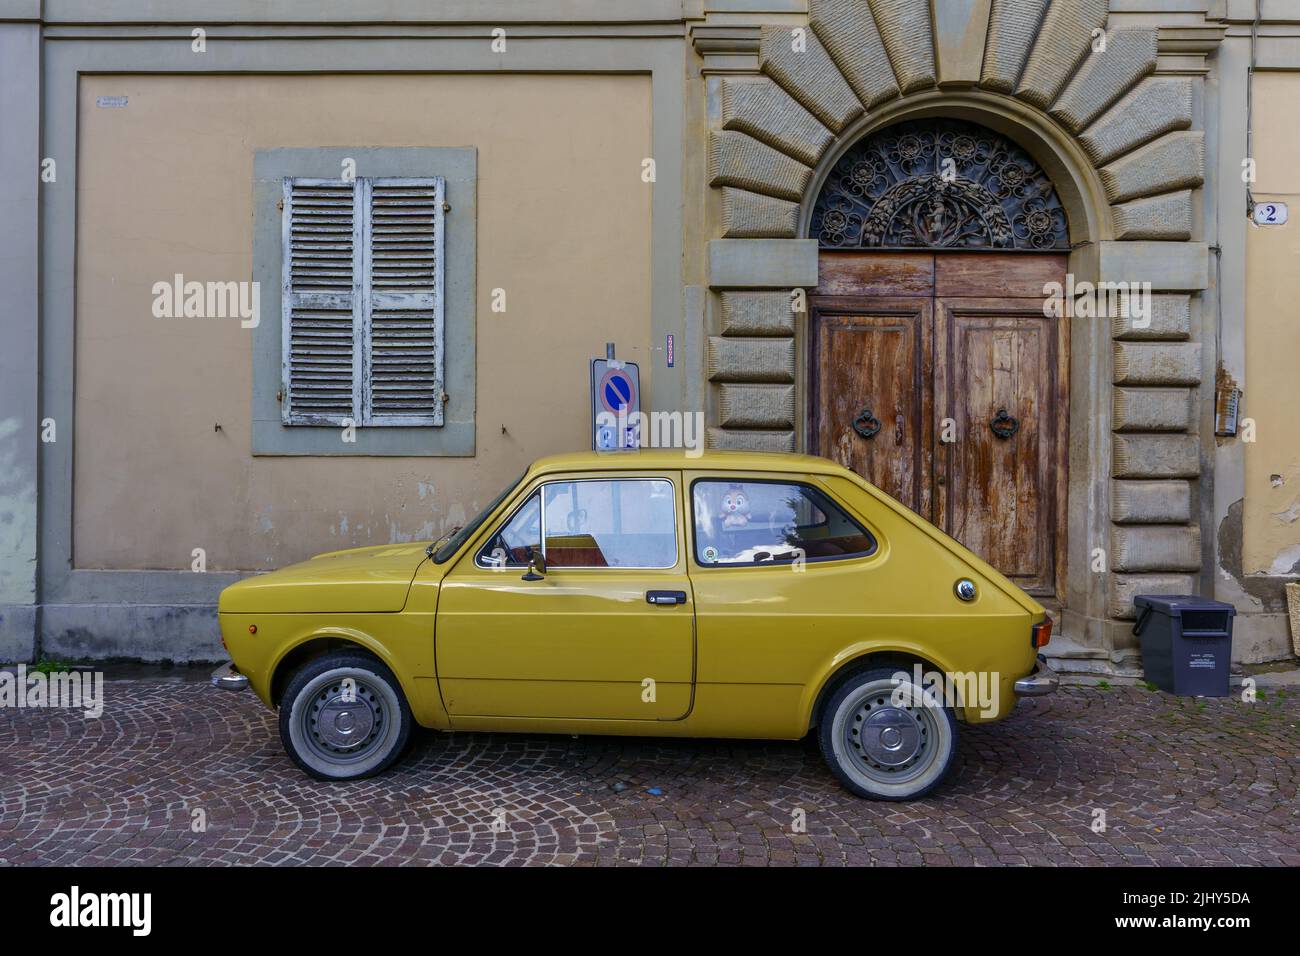 Fiat 127, famoso coche italiano de la década de 1970s. Foto de stock